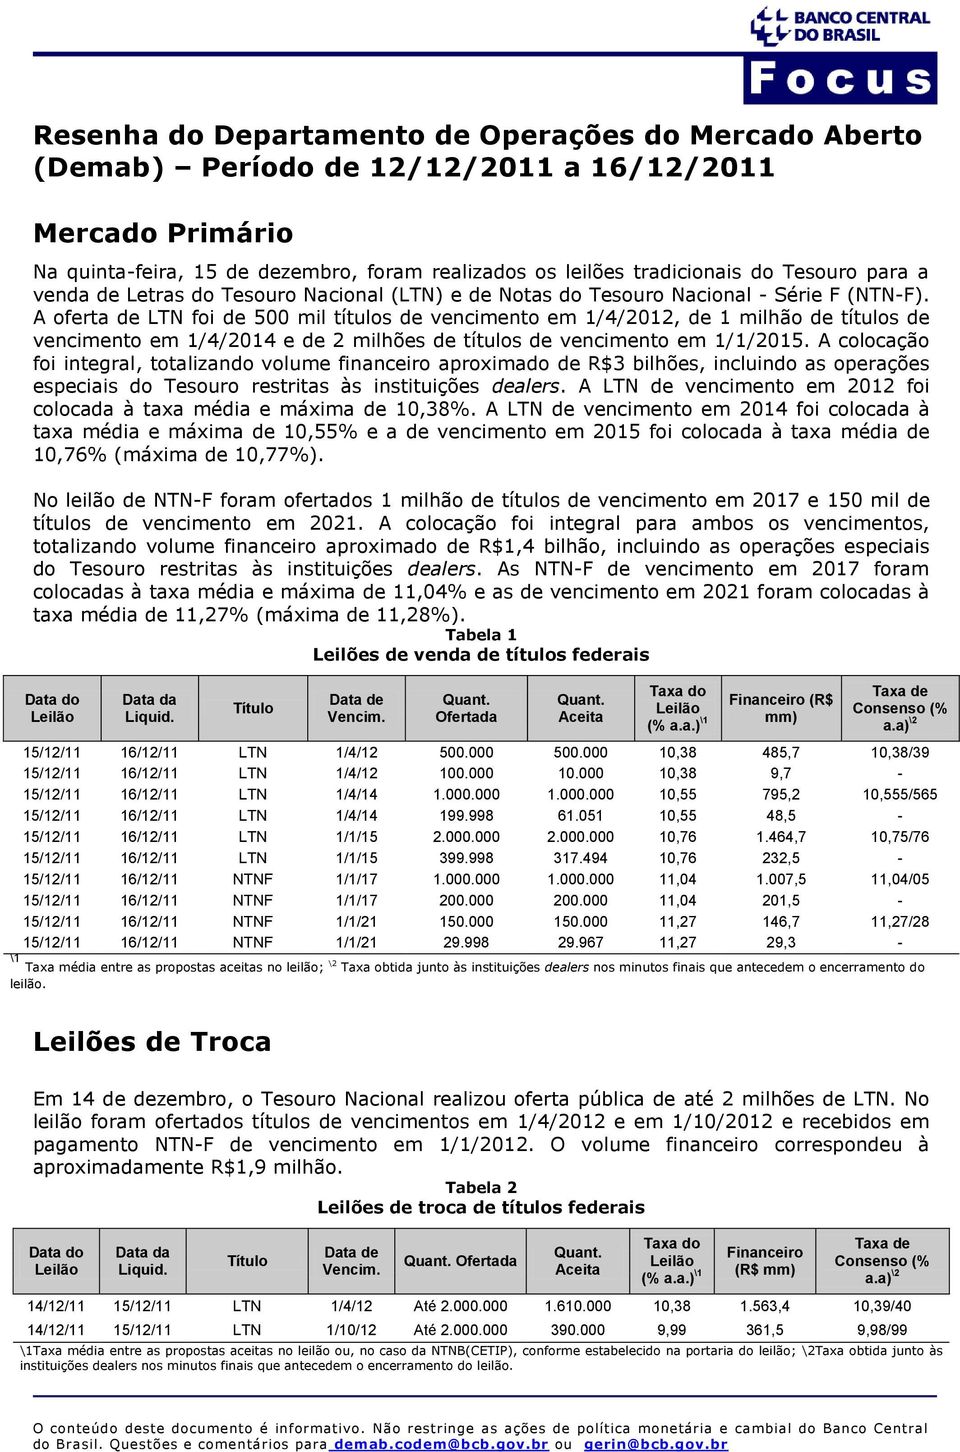 A oferta de LTN foi de 500 mil títulos de vencimento em 1/4/2012, de 1 milhão de títulos de vencimento em 1/4/2014 e de 2 milhões de títulos de vencimento em 1/1/2015.